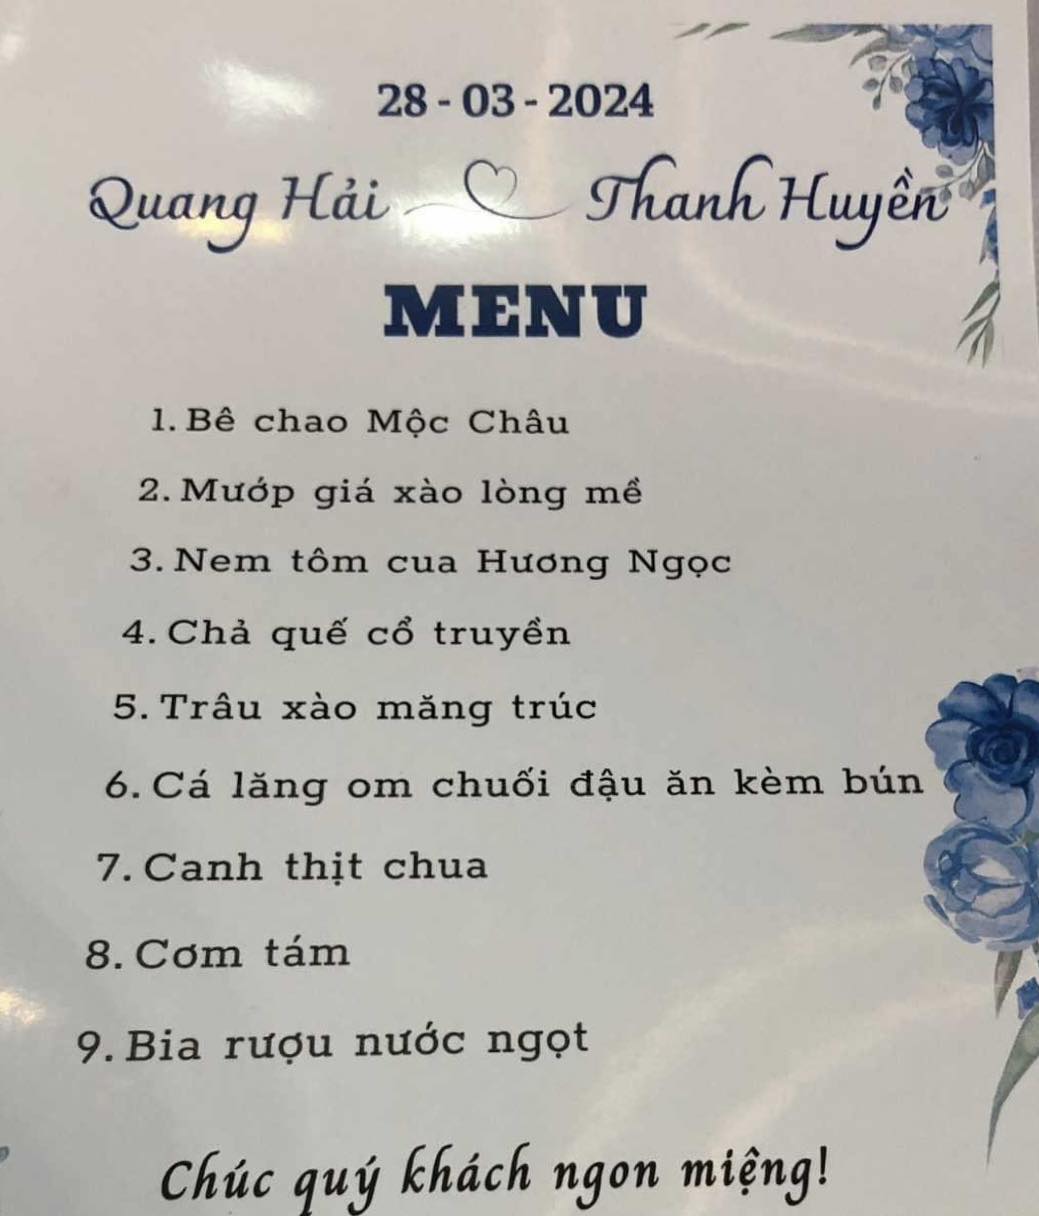 Thực đơn trong đám cưới Quang Hải. Ảnh: An Nguyên